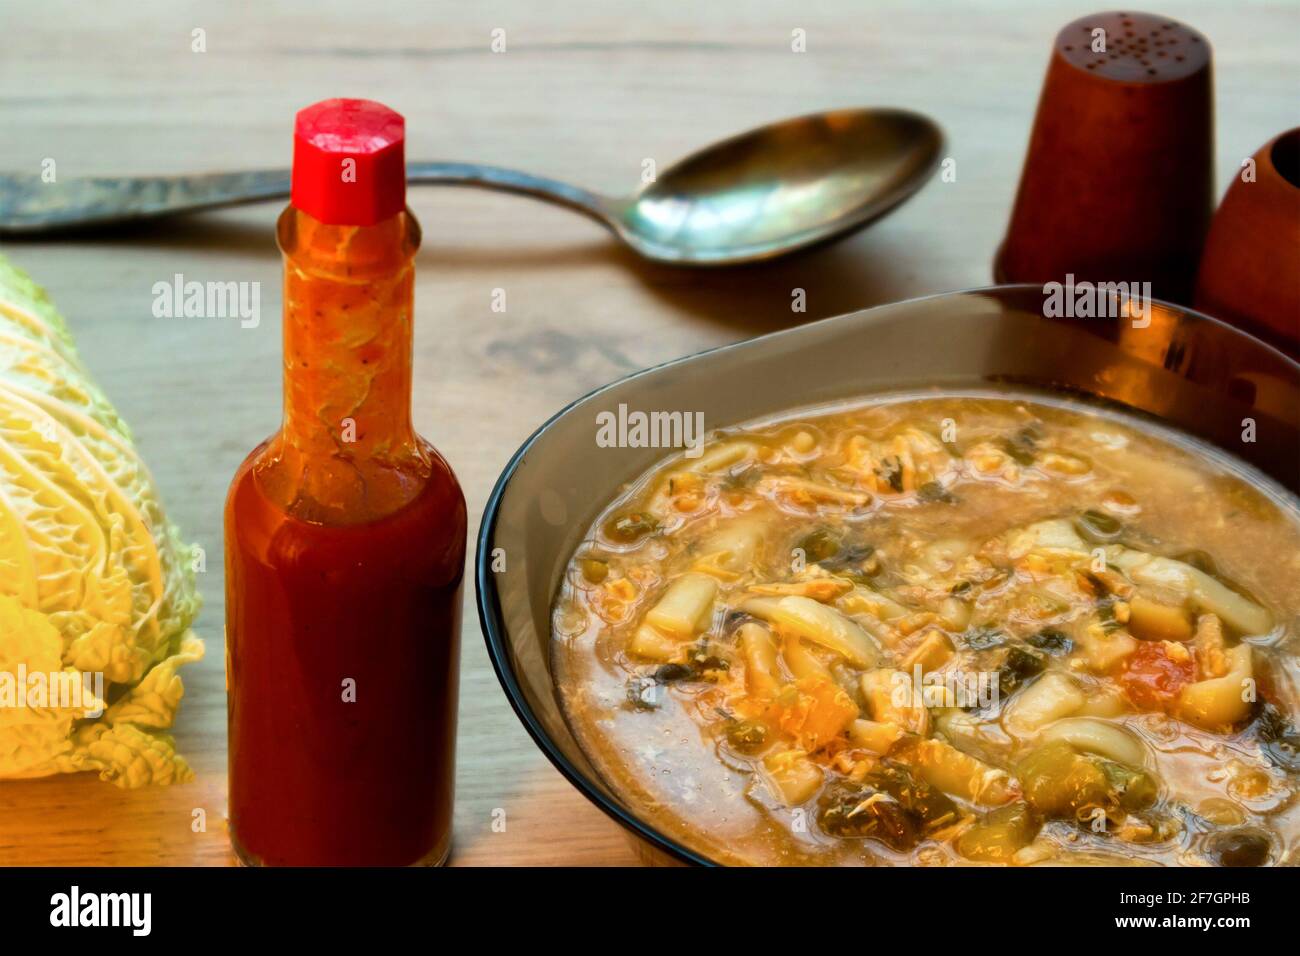 Sopa de fideos asiáticos picantes en un tazón de vidrio, salsa tabasco y col china servida en un tablero de madera Foto de stock